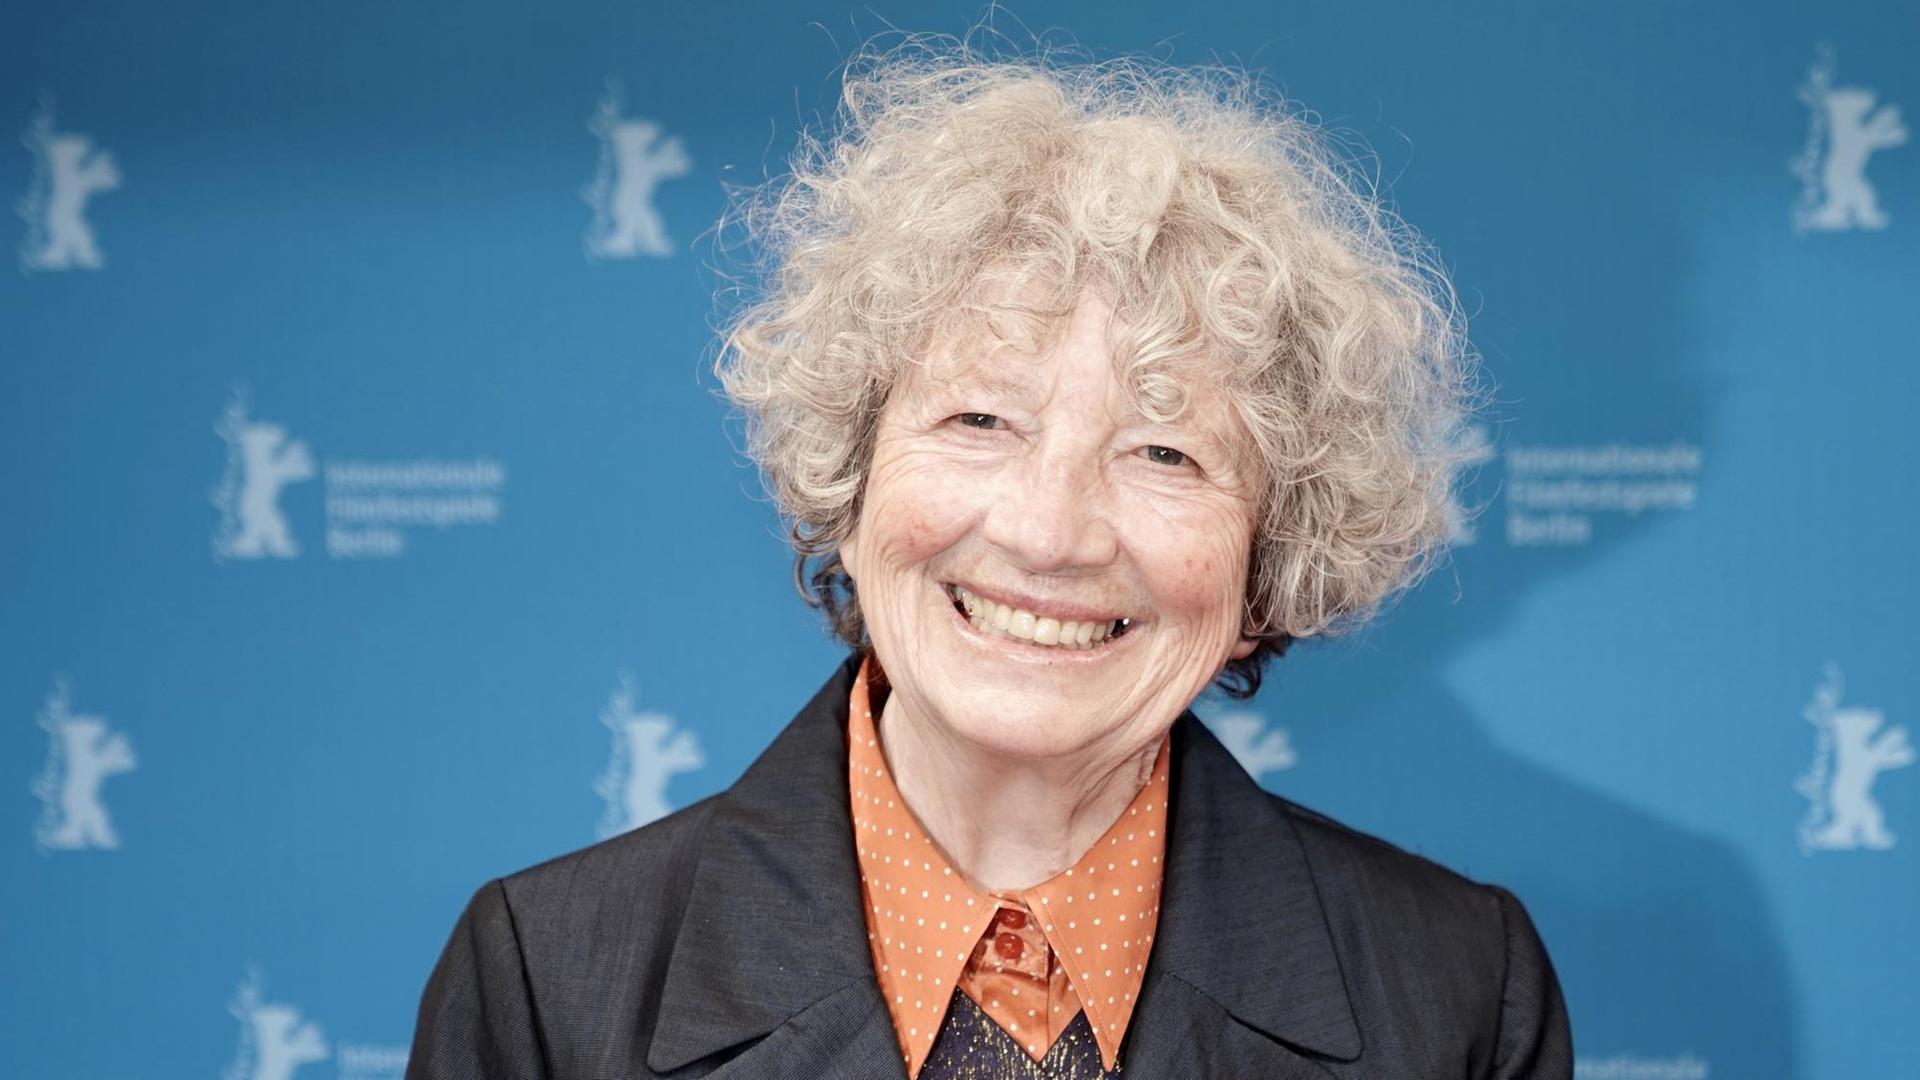 Ulrike Ottinger, Künstlerin und Regisseurin, erhält die Auszeichnung Berlinale Kamera bei der 70. Berlinale in 2020.